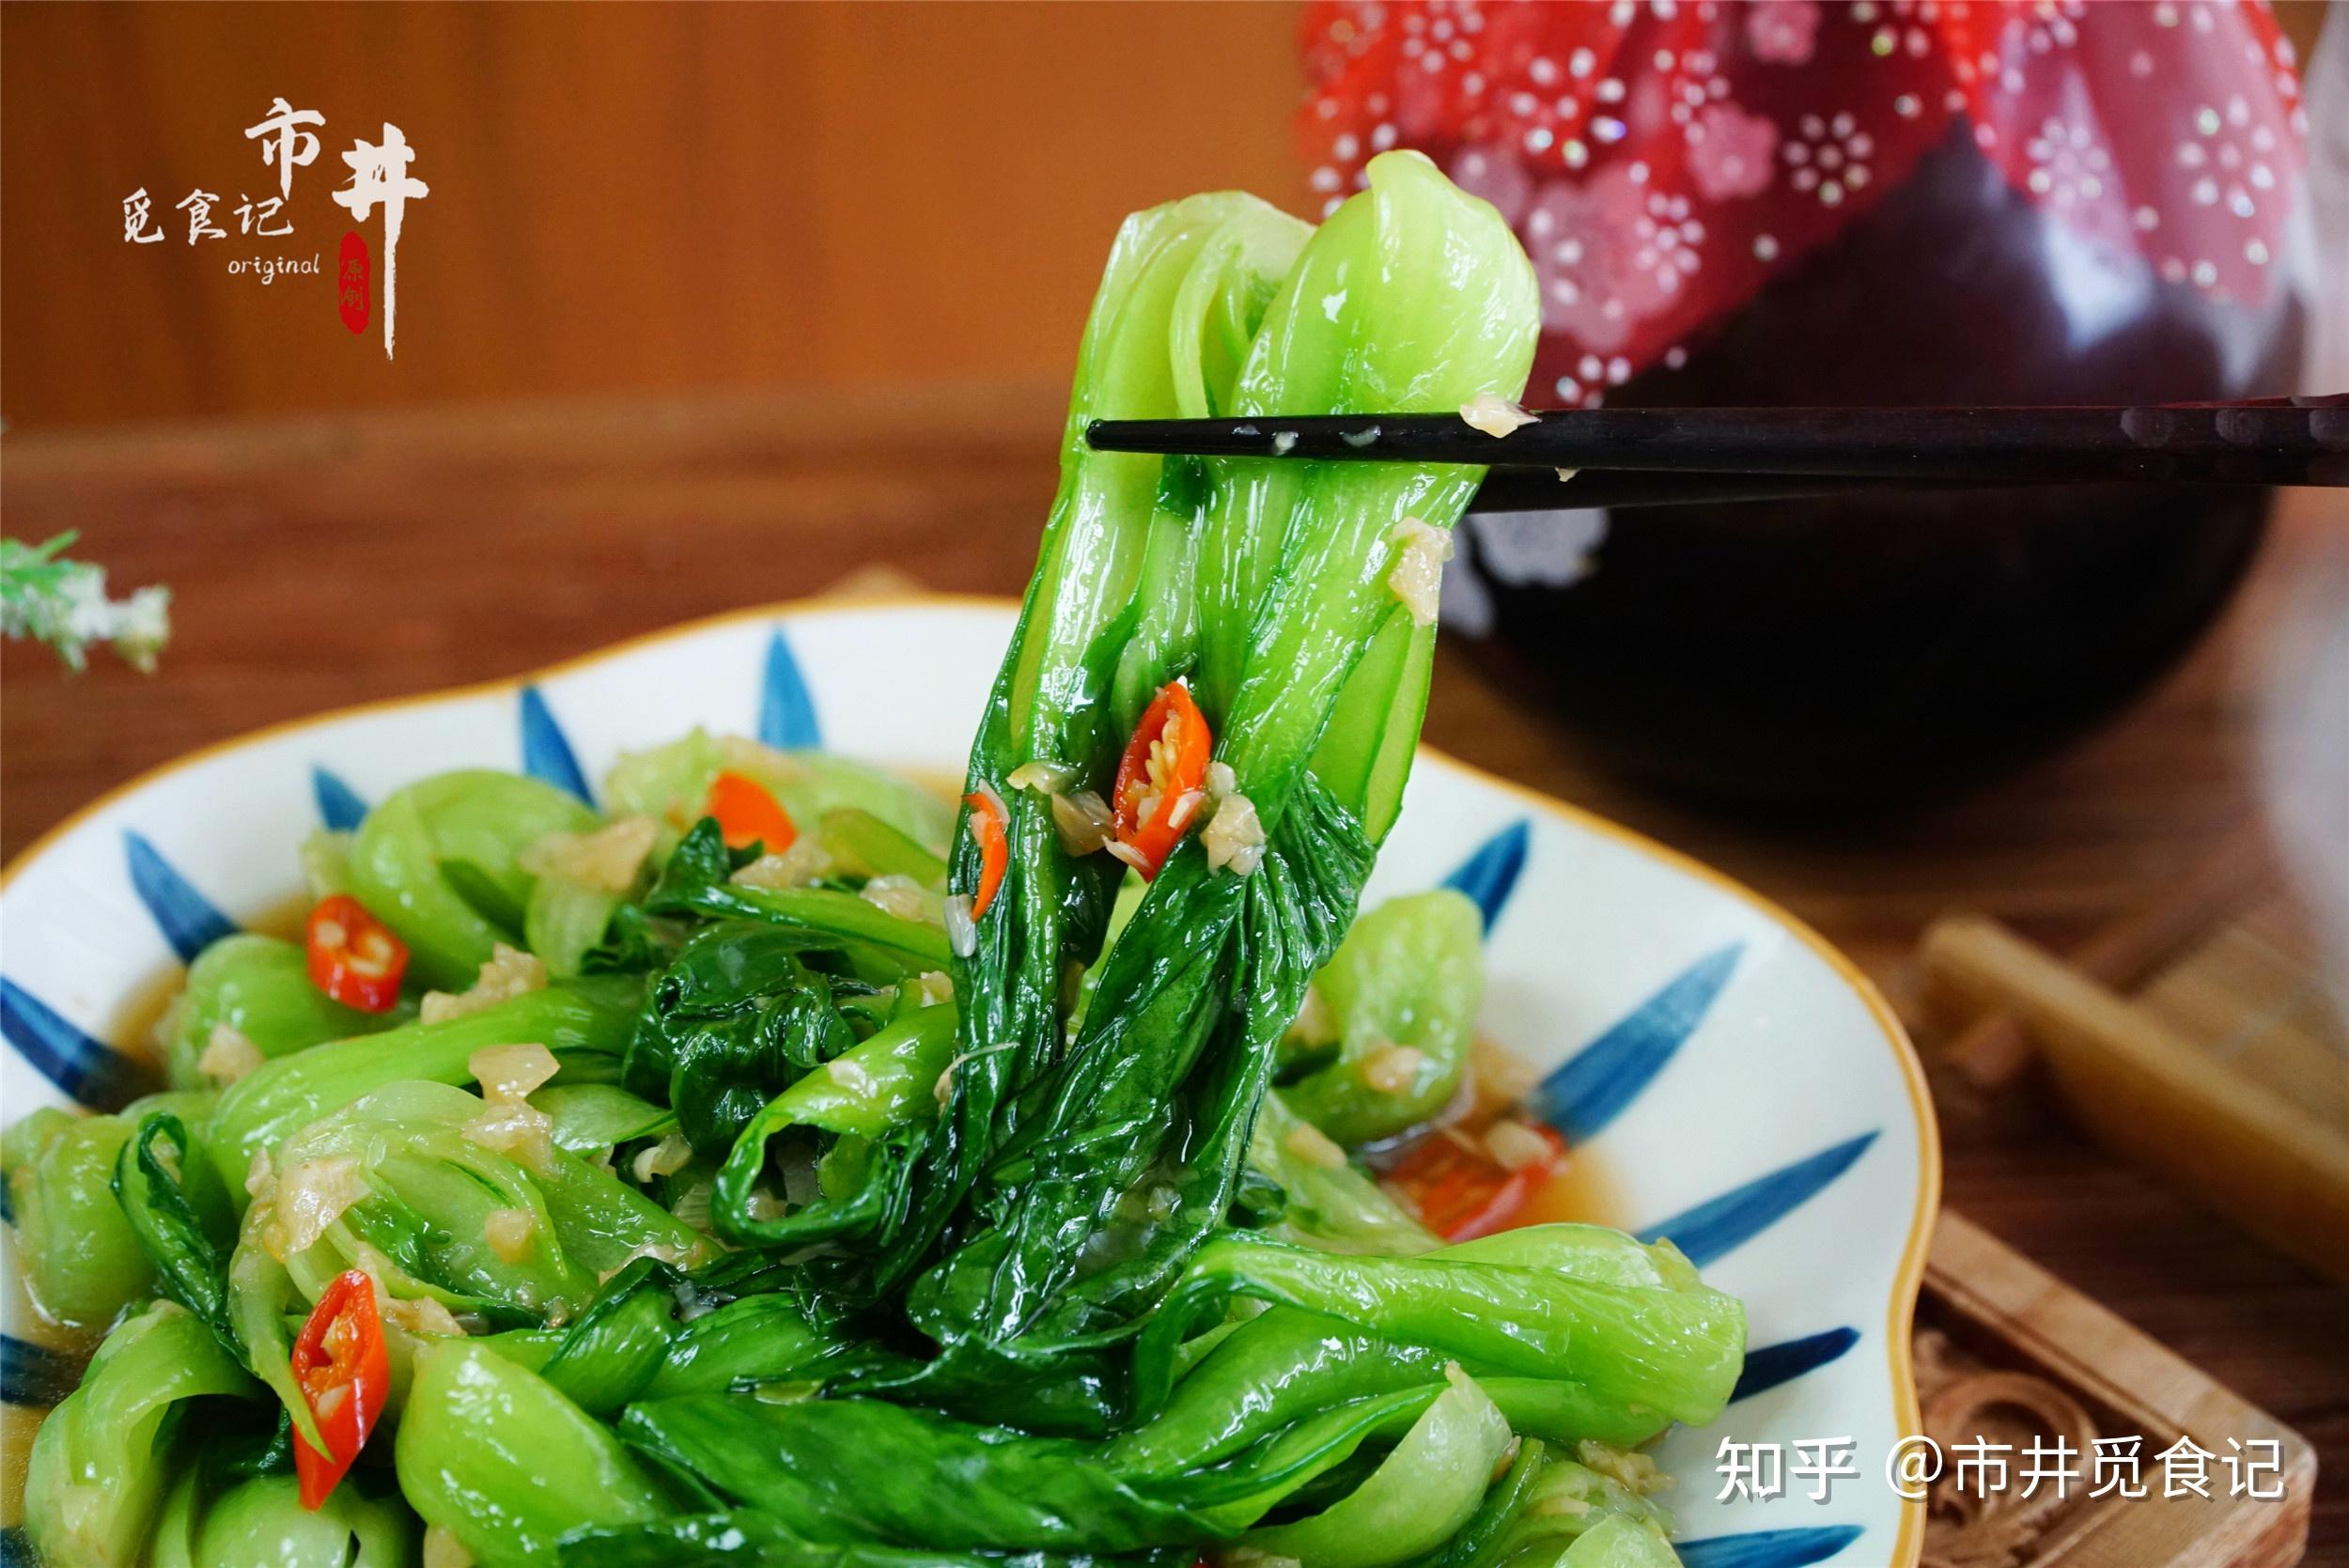 上海青-挑选-价格-菜谱--广州天天生鲜蔬菜配送公司